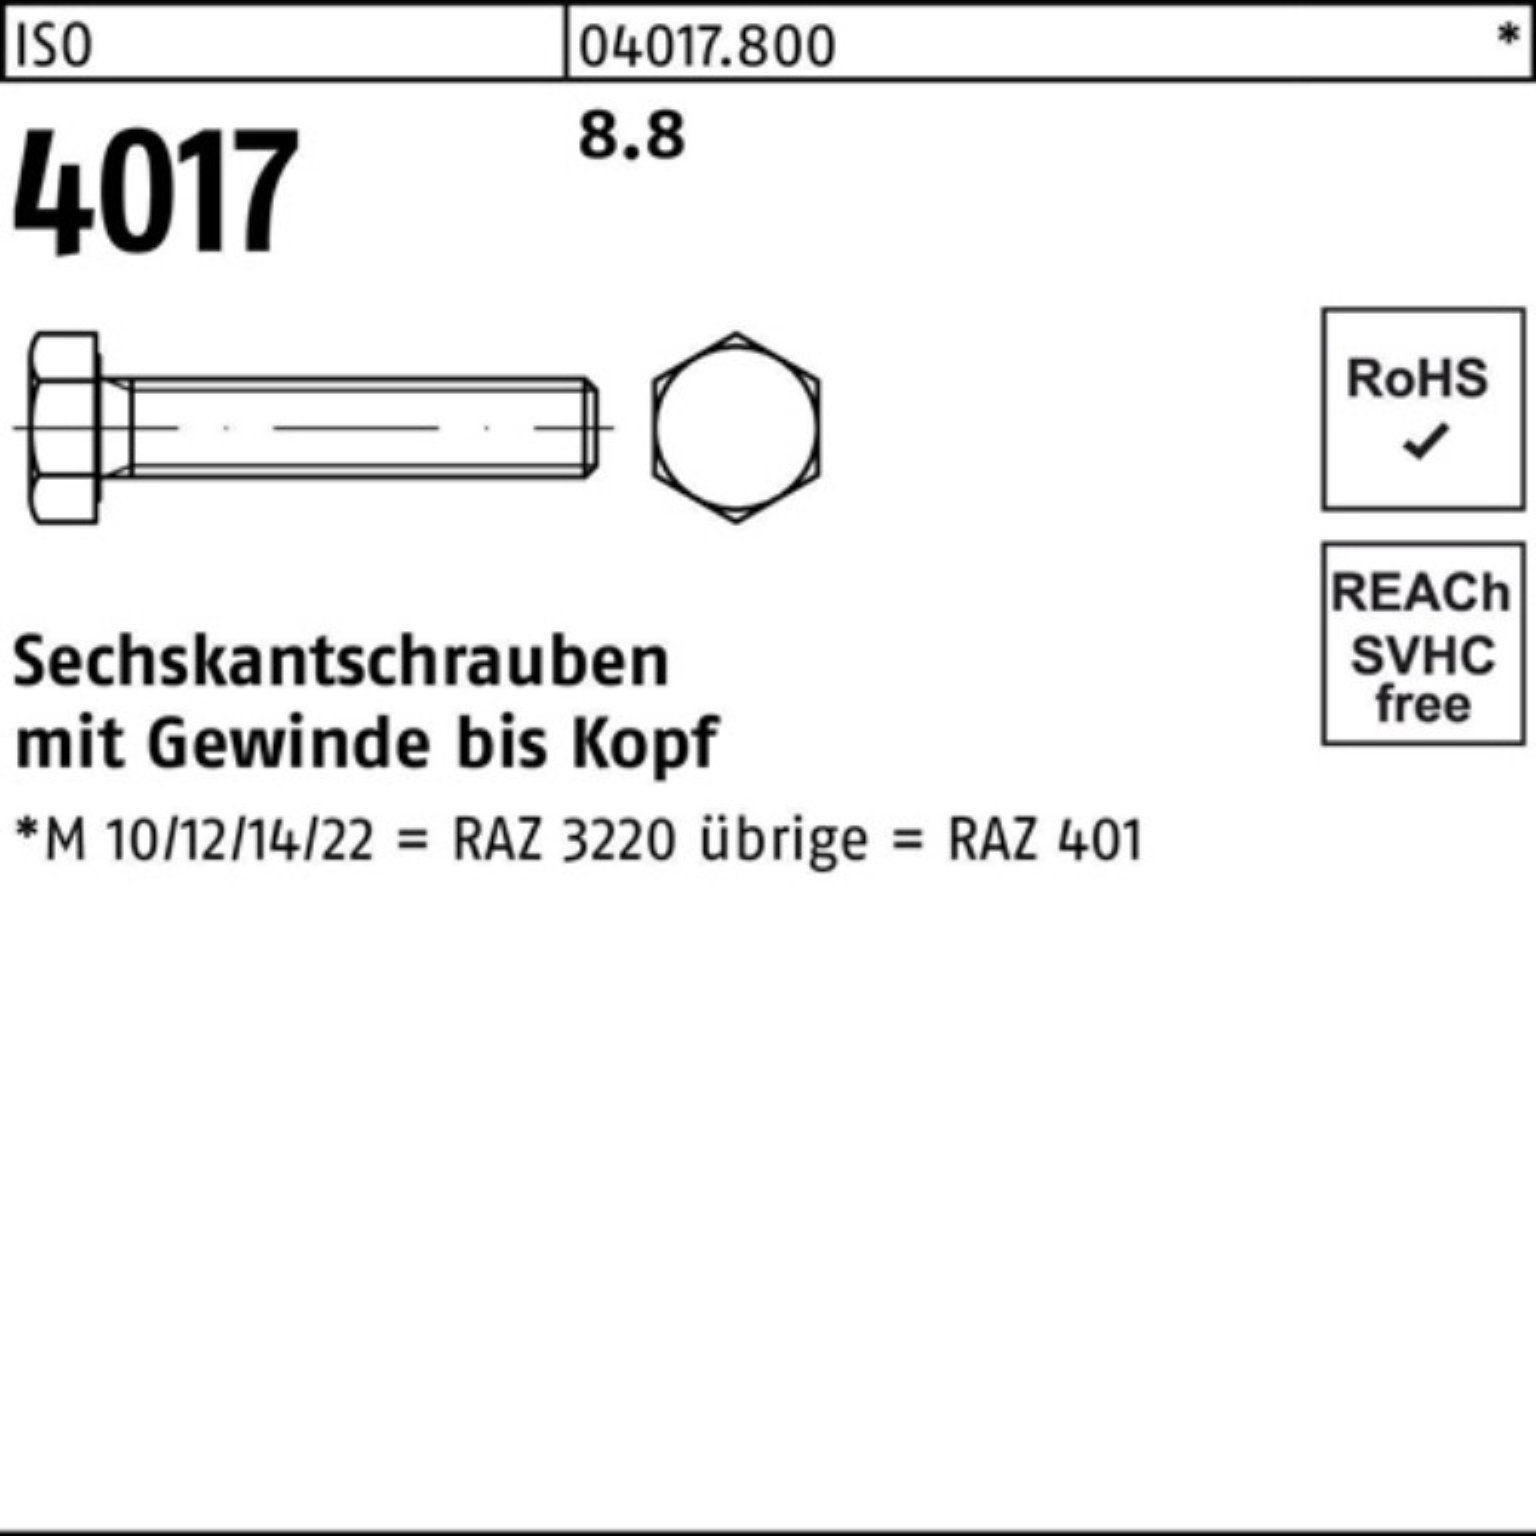 Bufab Sechskantschraube 100er 1 M42x 4017 Pack ISO Sechskantschraube ISO 8.8 VG 4017 50 Stück